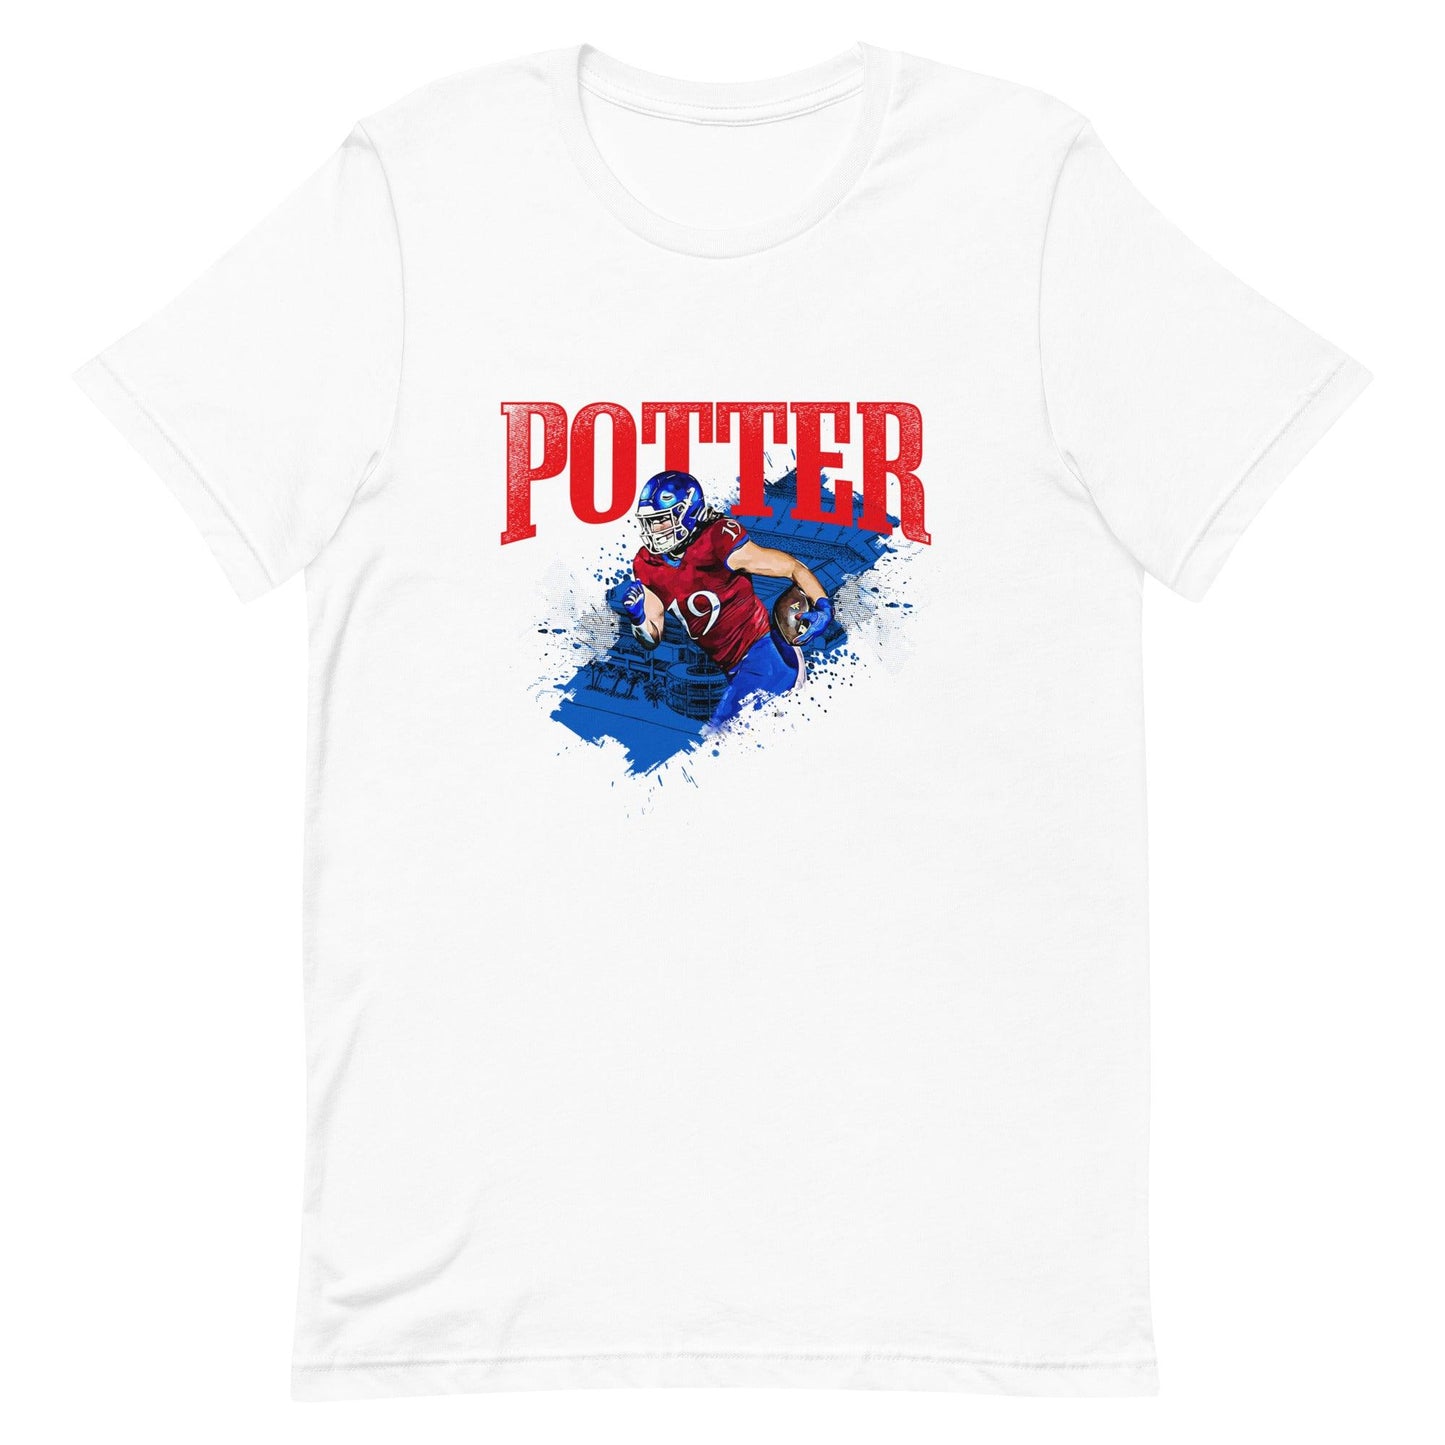 Gavin Potter "Gametime" t-shirt - Fan Arch